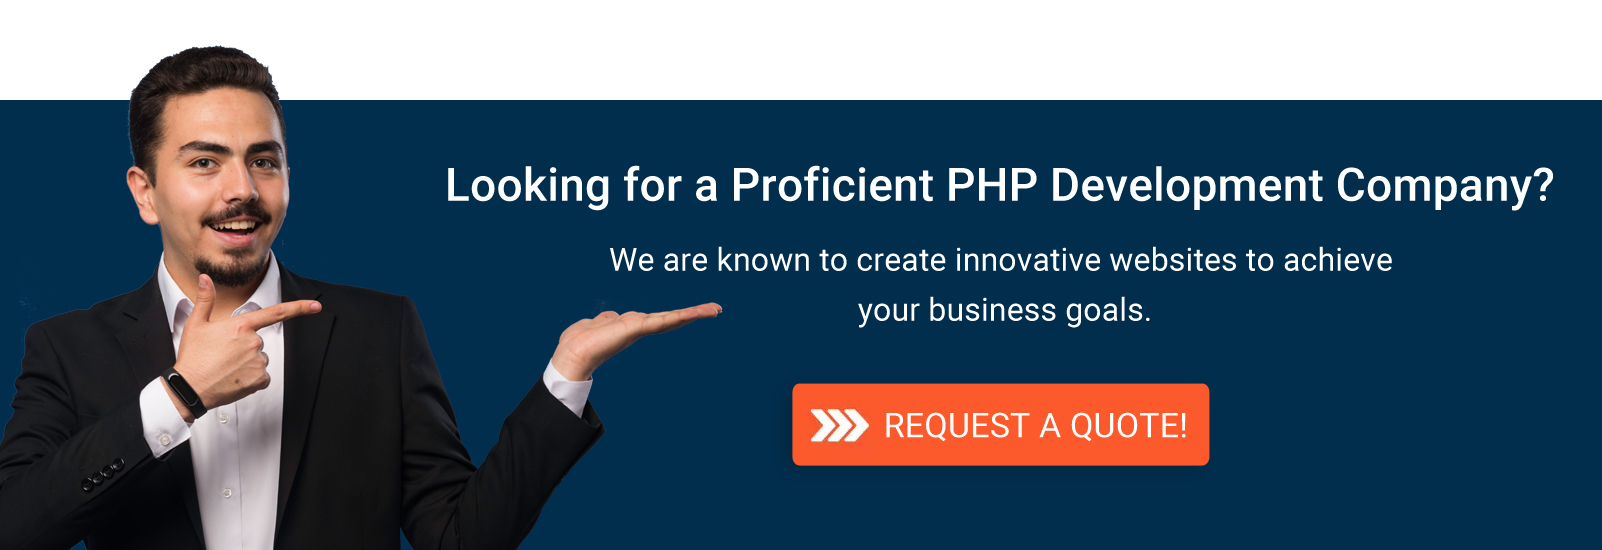 Proficient PHP development company